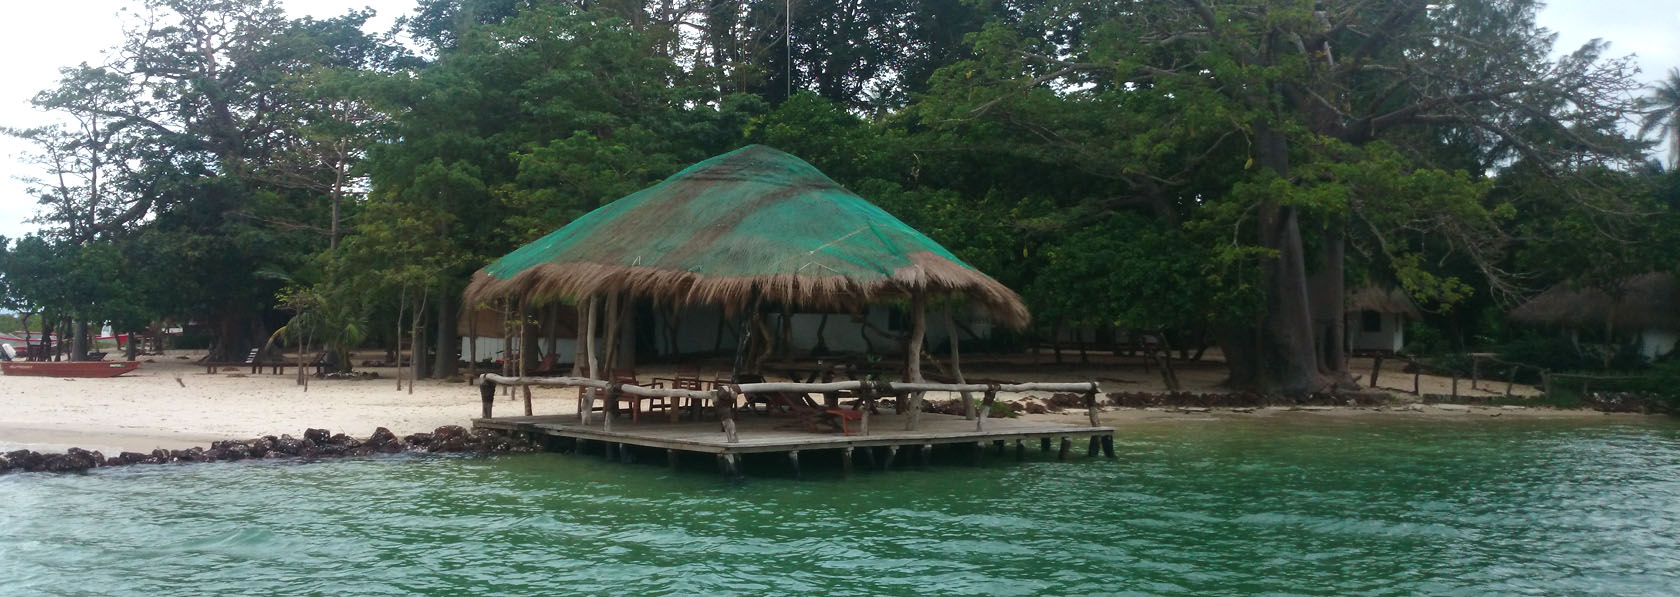 paillote de Kere hotel lodge de l archipel des bijagos en guinee bissau